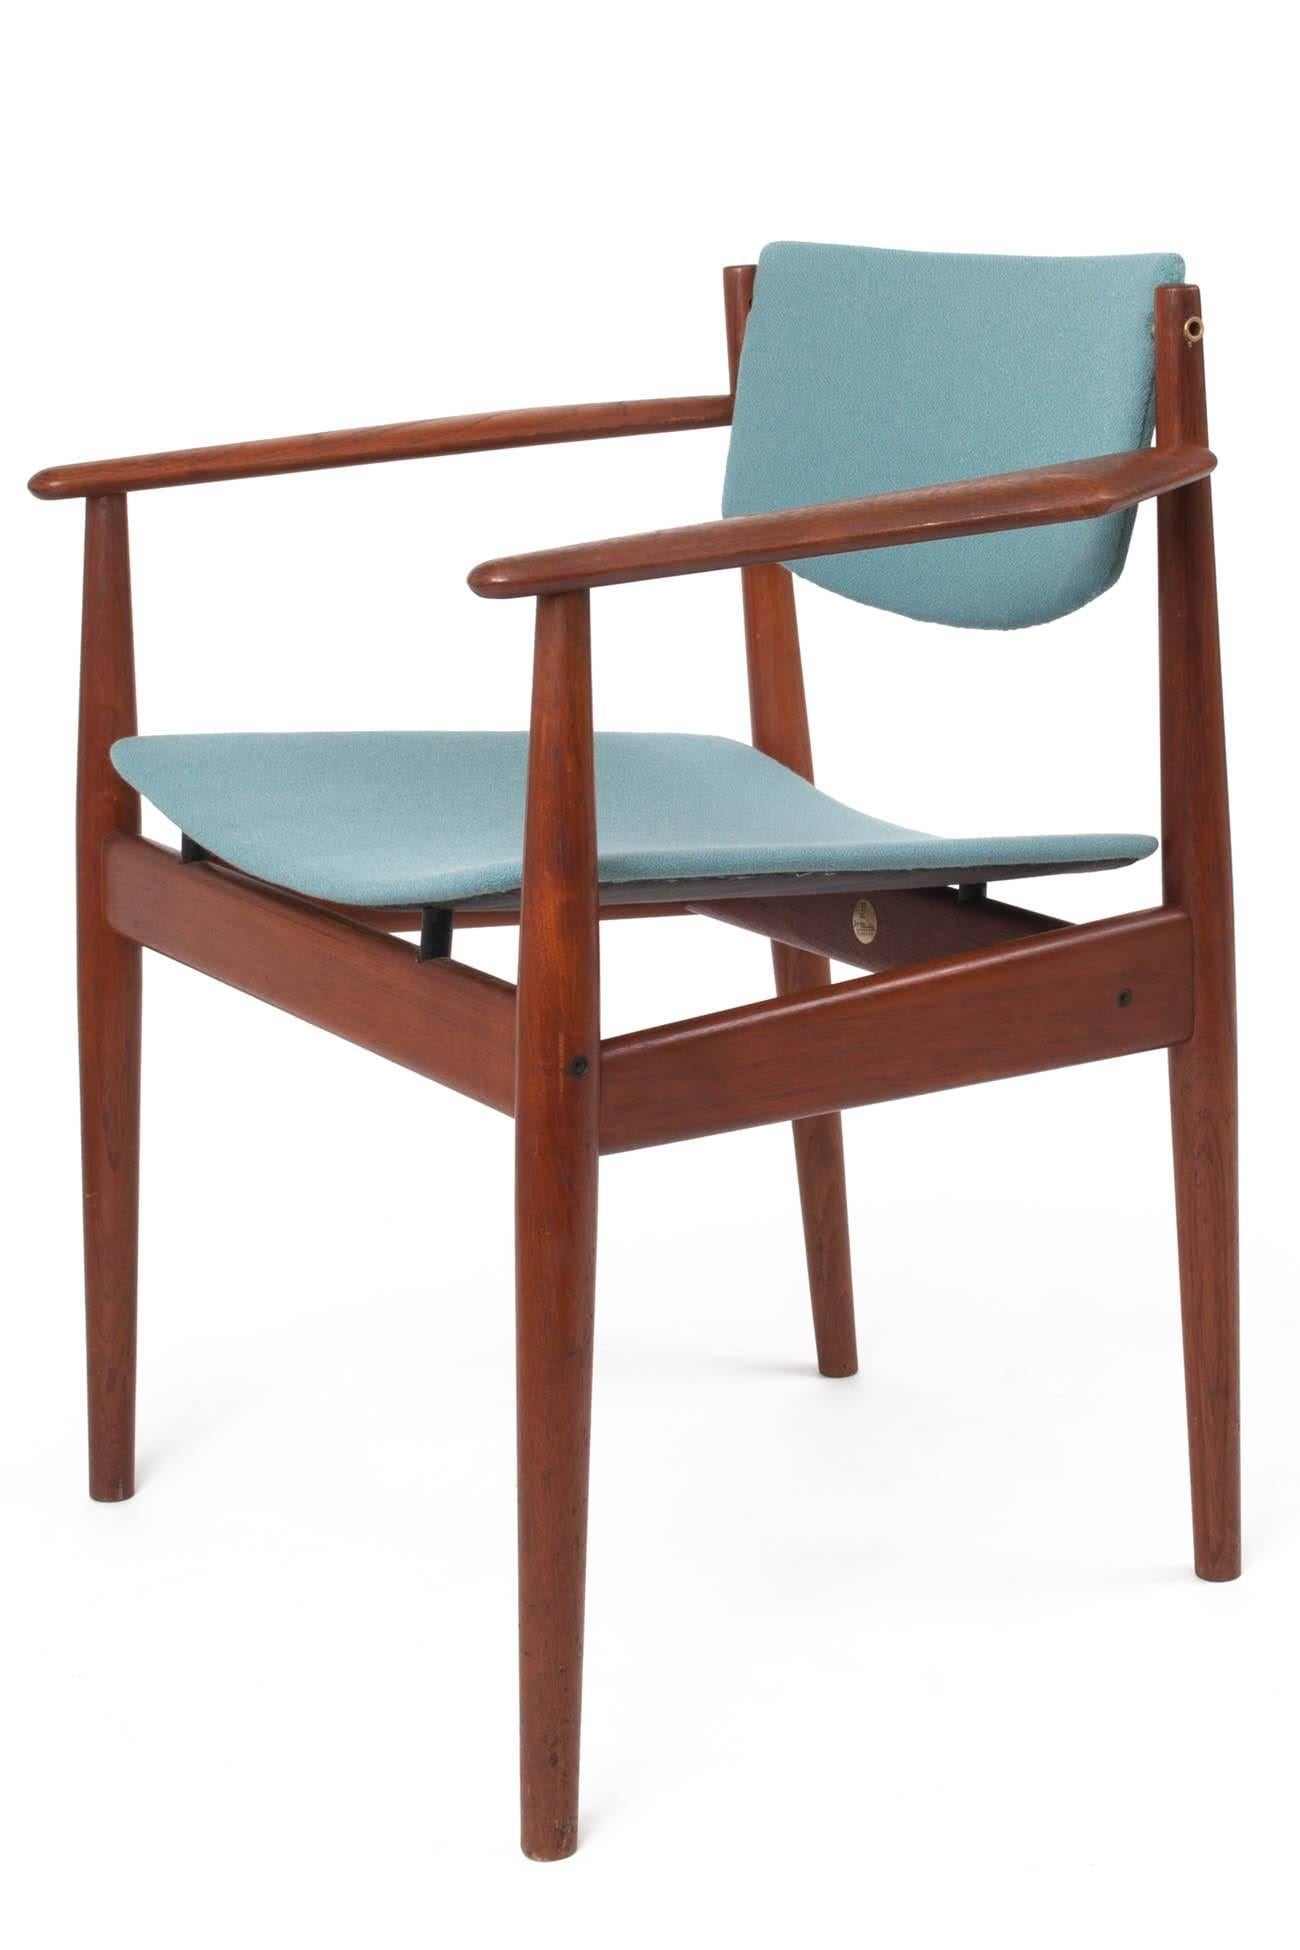 Cotton Finn Juhl Set of Six Scandinavian Modern Teak Dining Chairs, Denmark 1960's